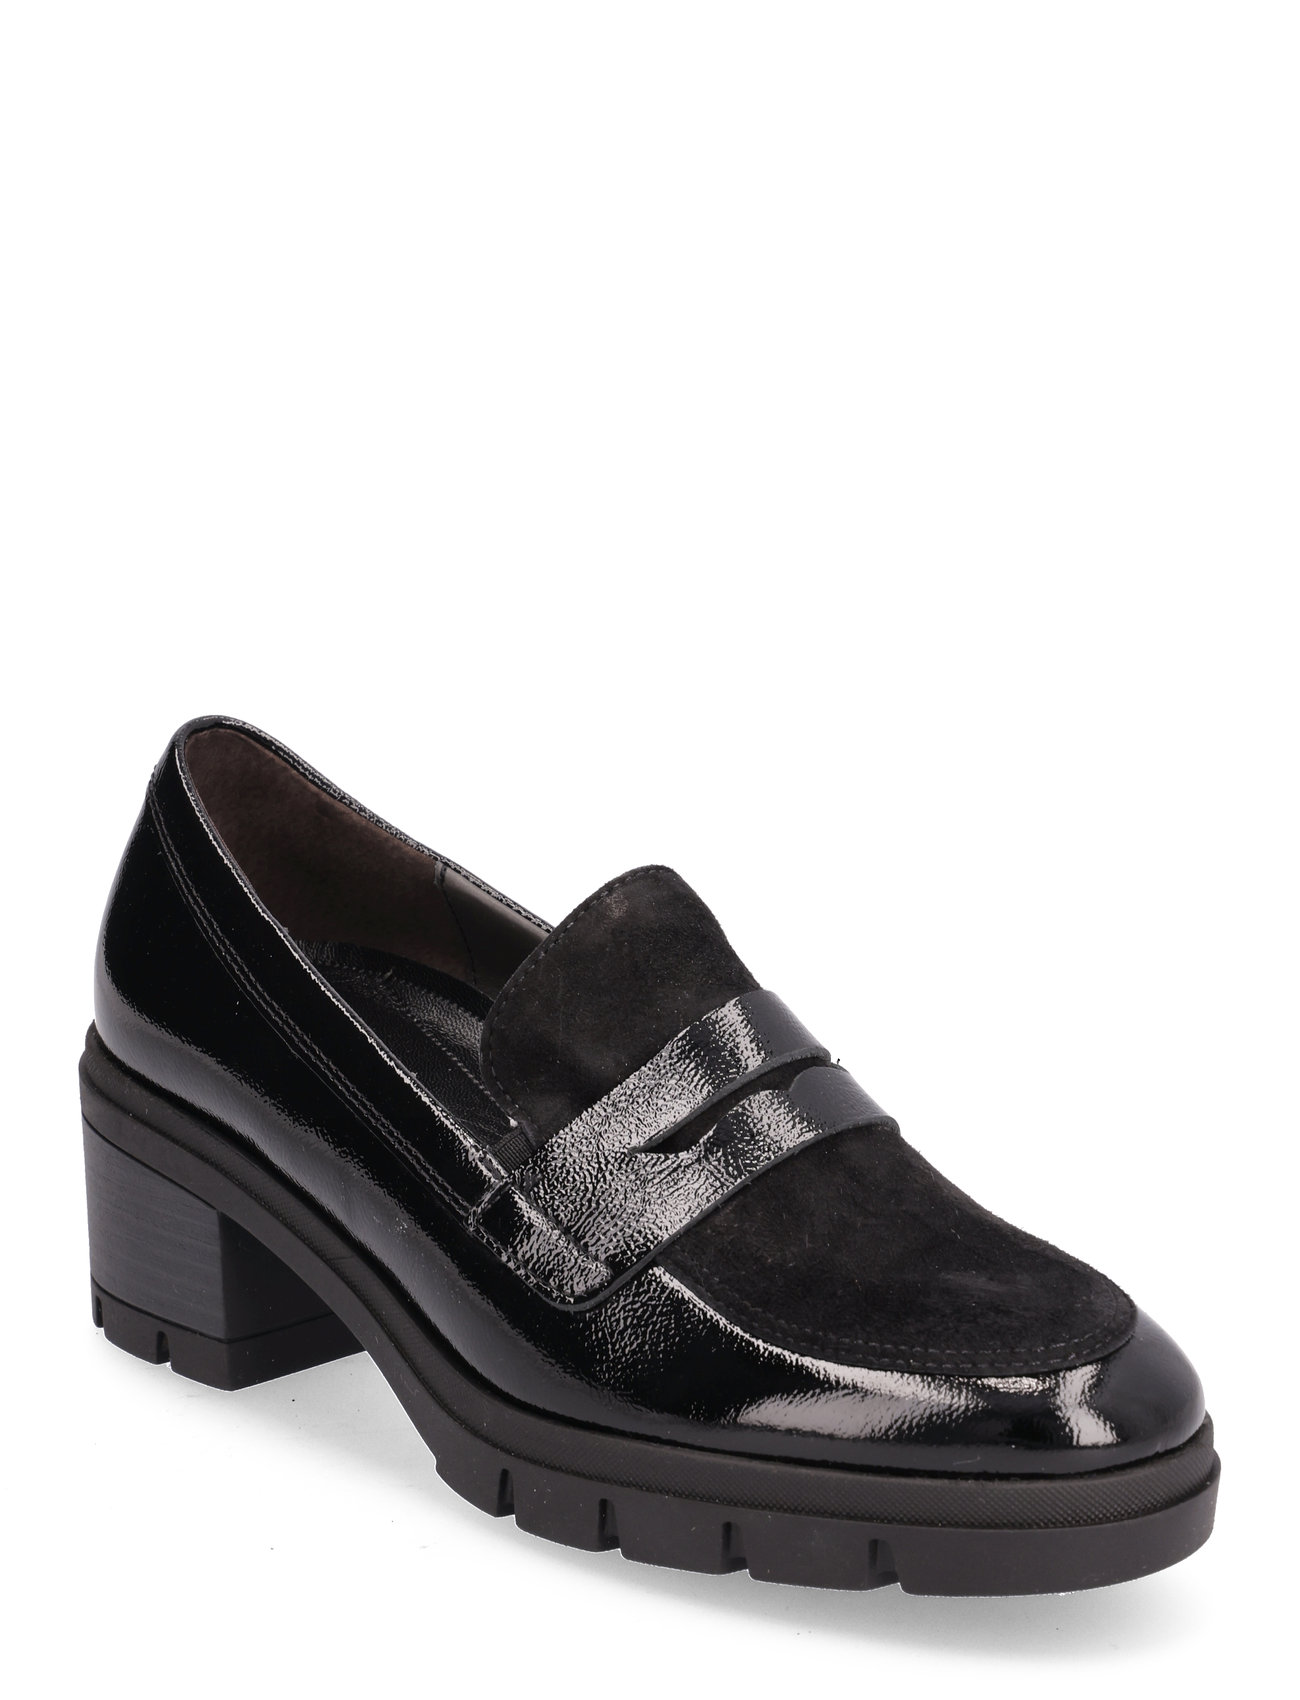 Loafer Shoes Heels Heeled Loafers Black Gabor